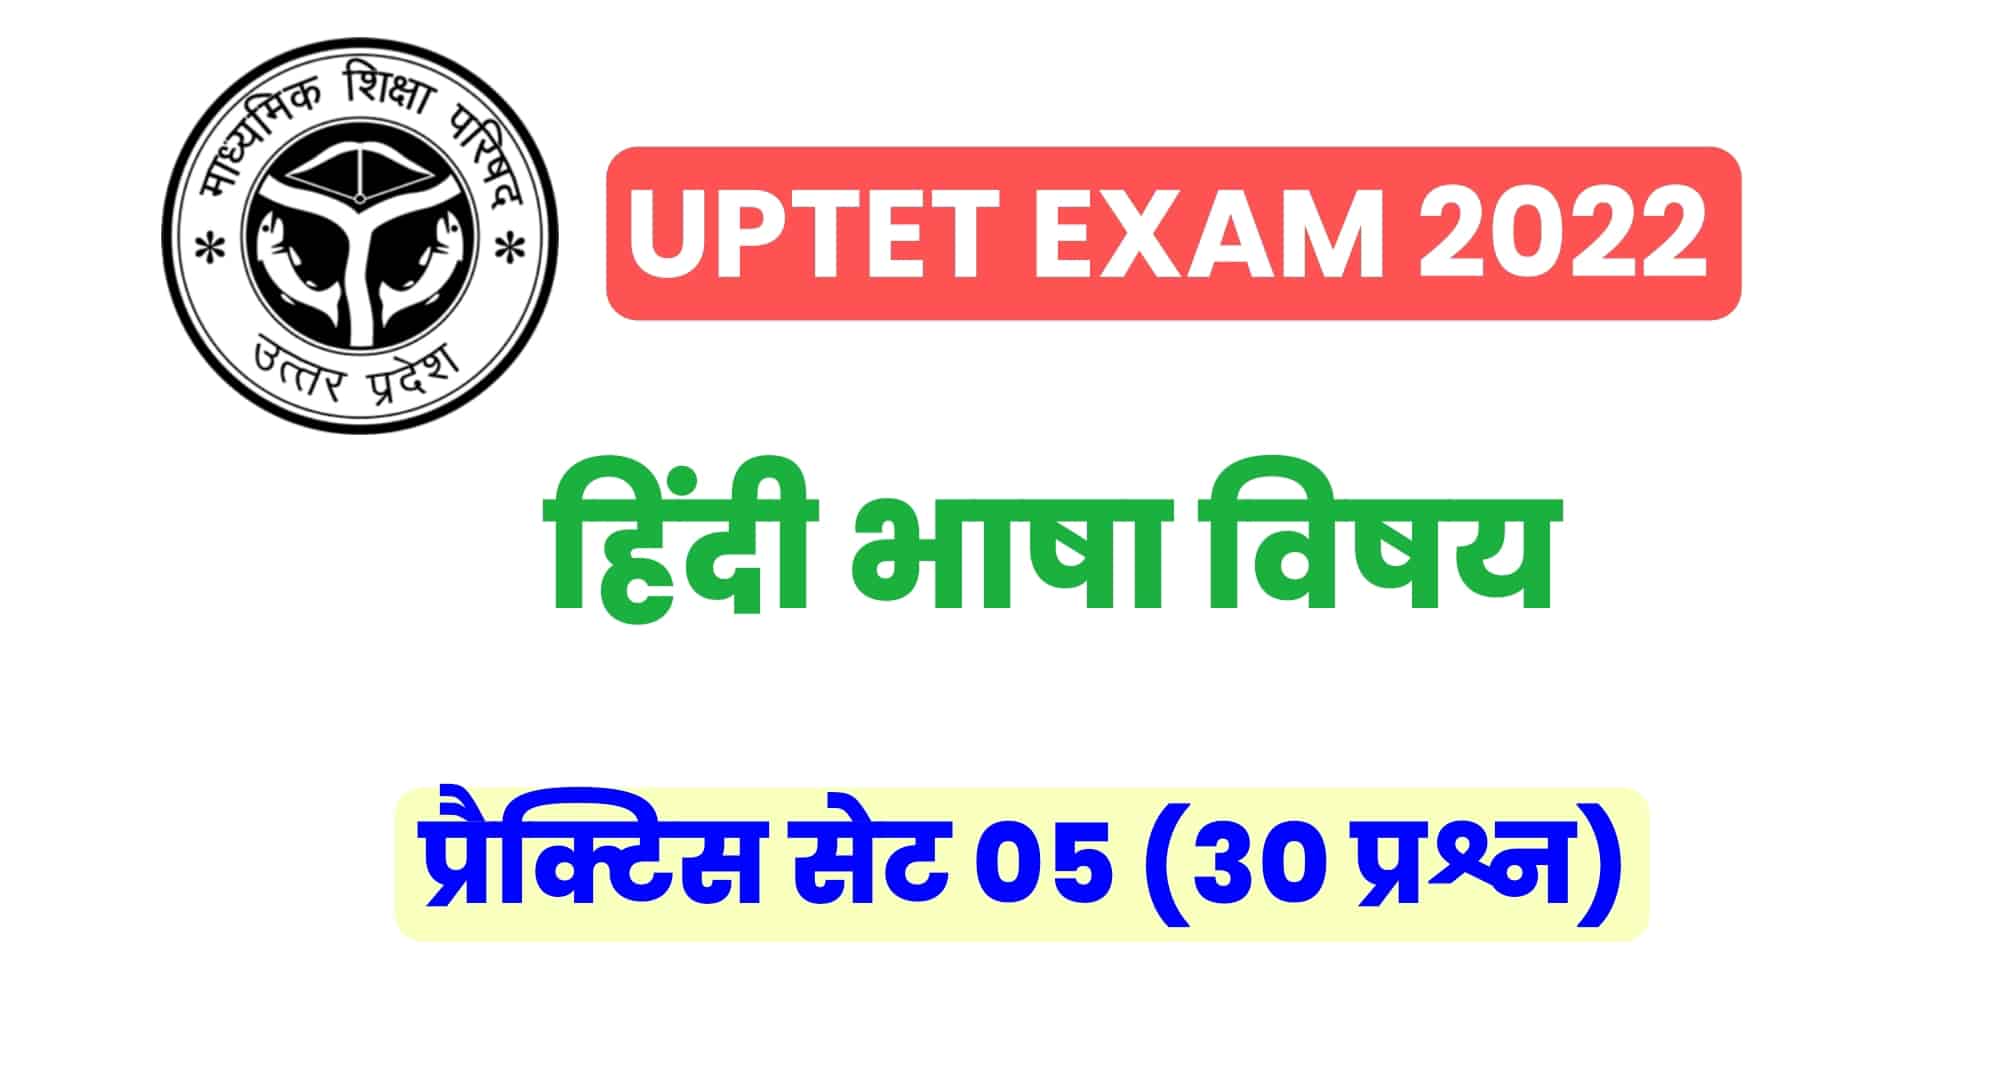 UPTET हिंदी विषय प्रैक्टिस सेट 05 : UPTET की परीक्षा में कई बार पूछे गए इन प्रश्नों को जरूर पढ़ें